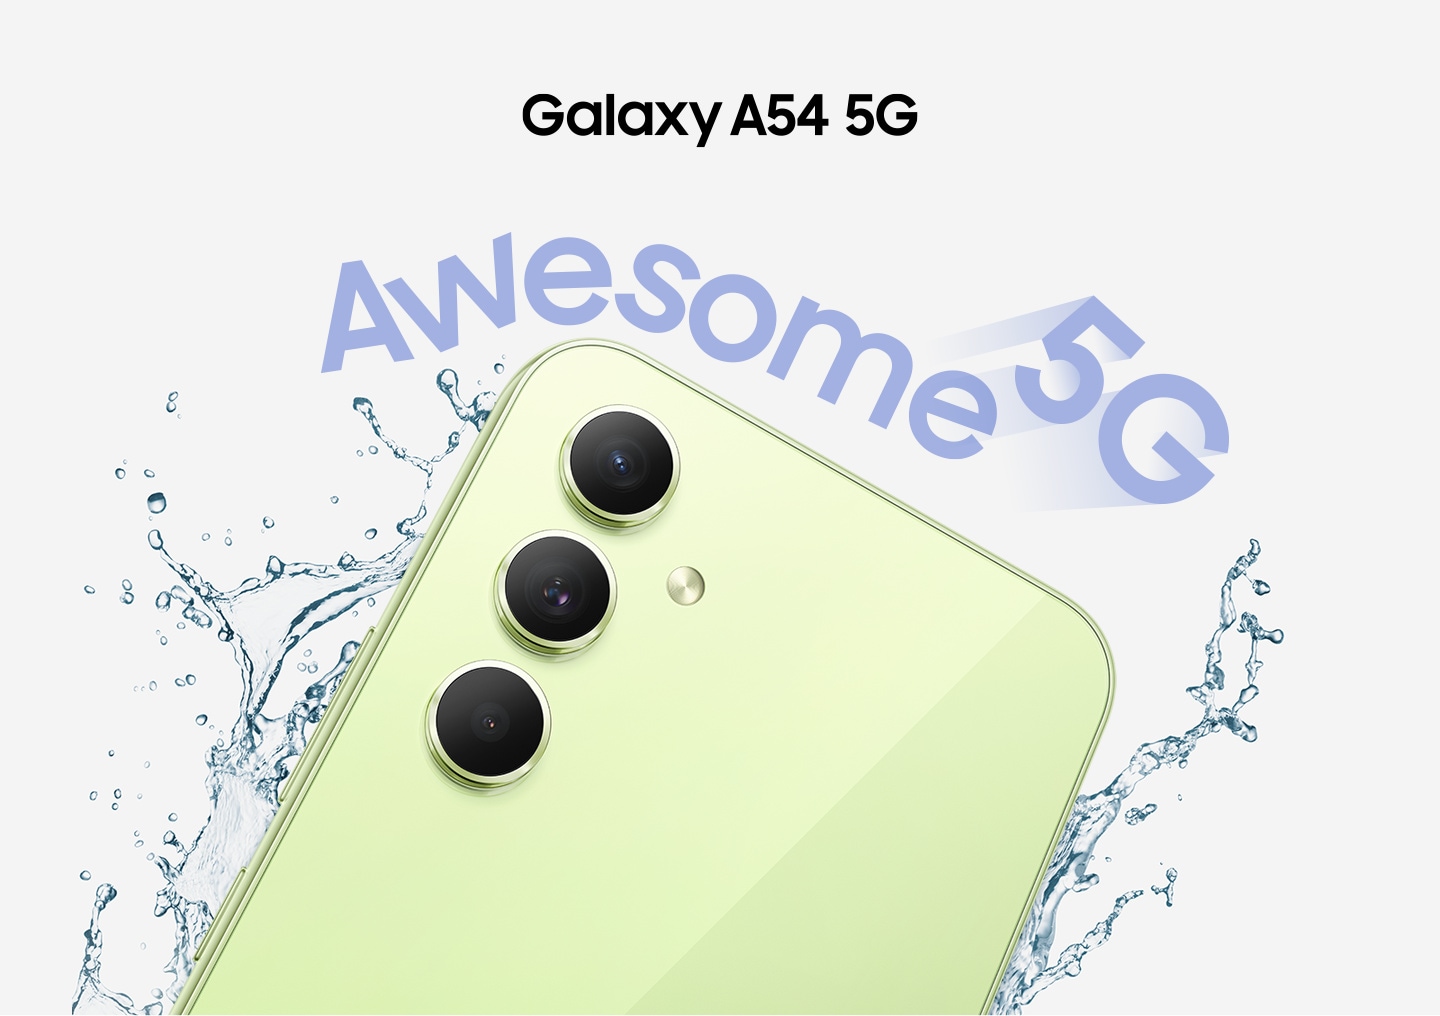 Gornja polovina stražnje strane Galaxy A54 5G u boji Awesome limeta prikazana je s kapljicama vode koje prskaju oko njega. „Awesome 5G”.